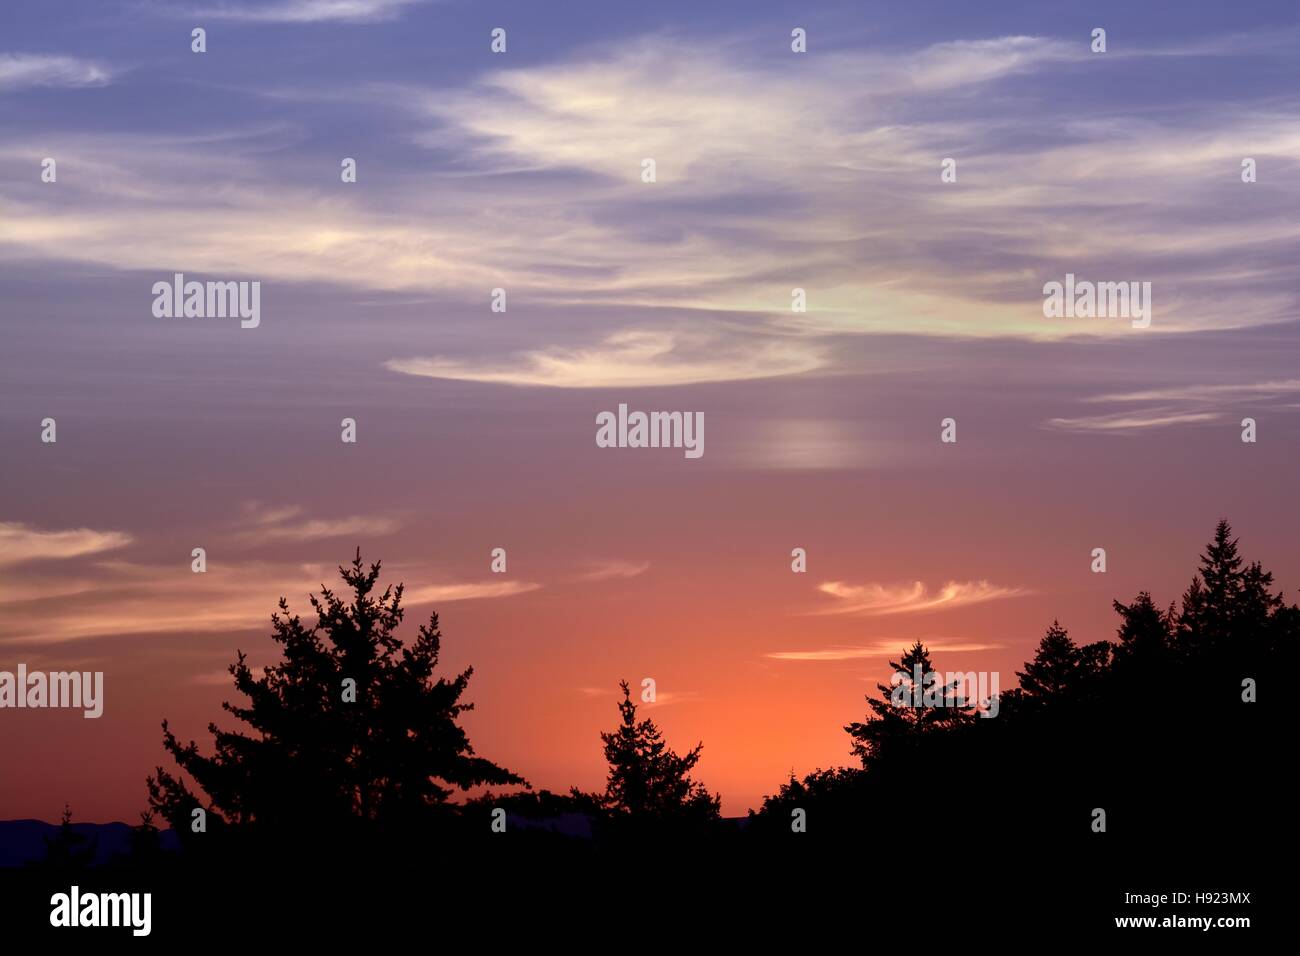 Ciel coucher de soleil avec des nuages colorés Banque D'Images